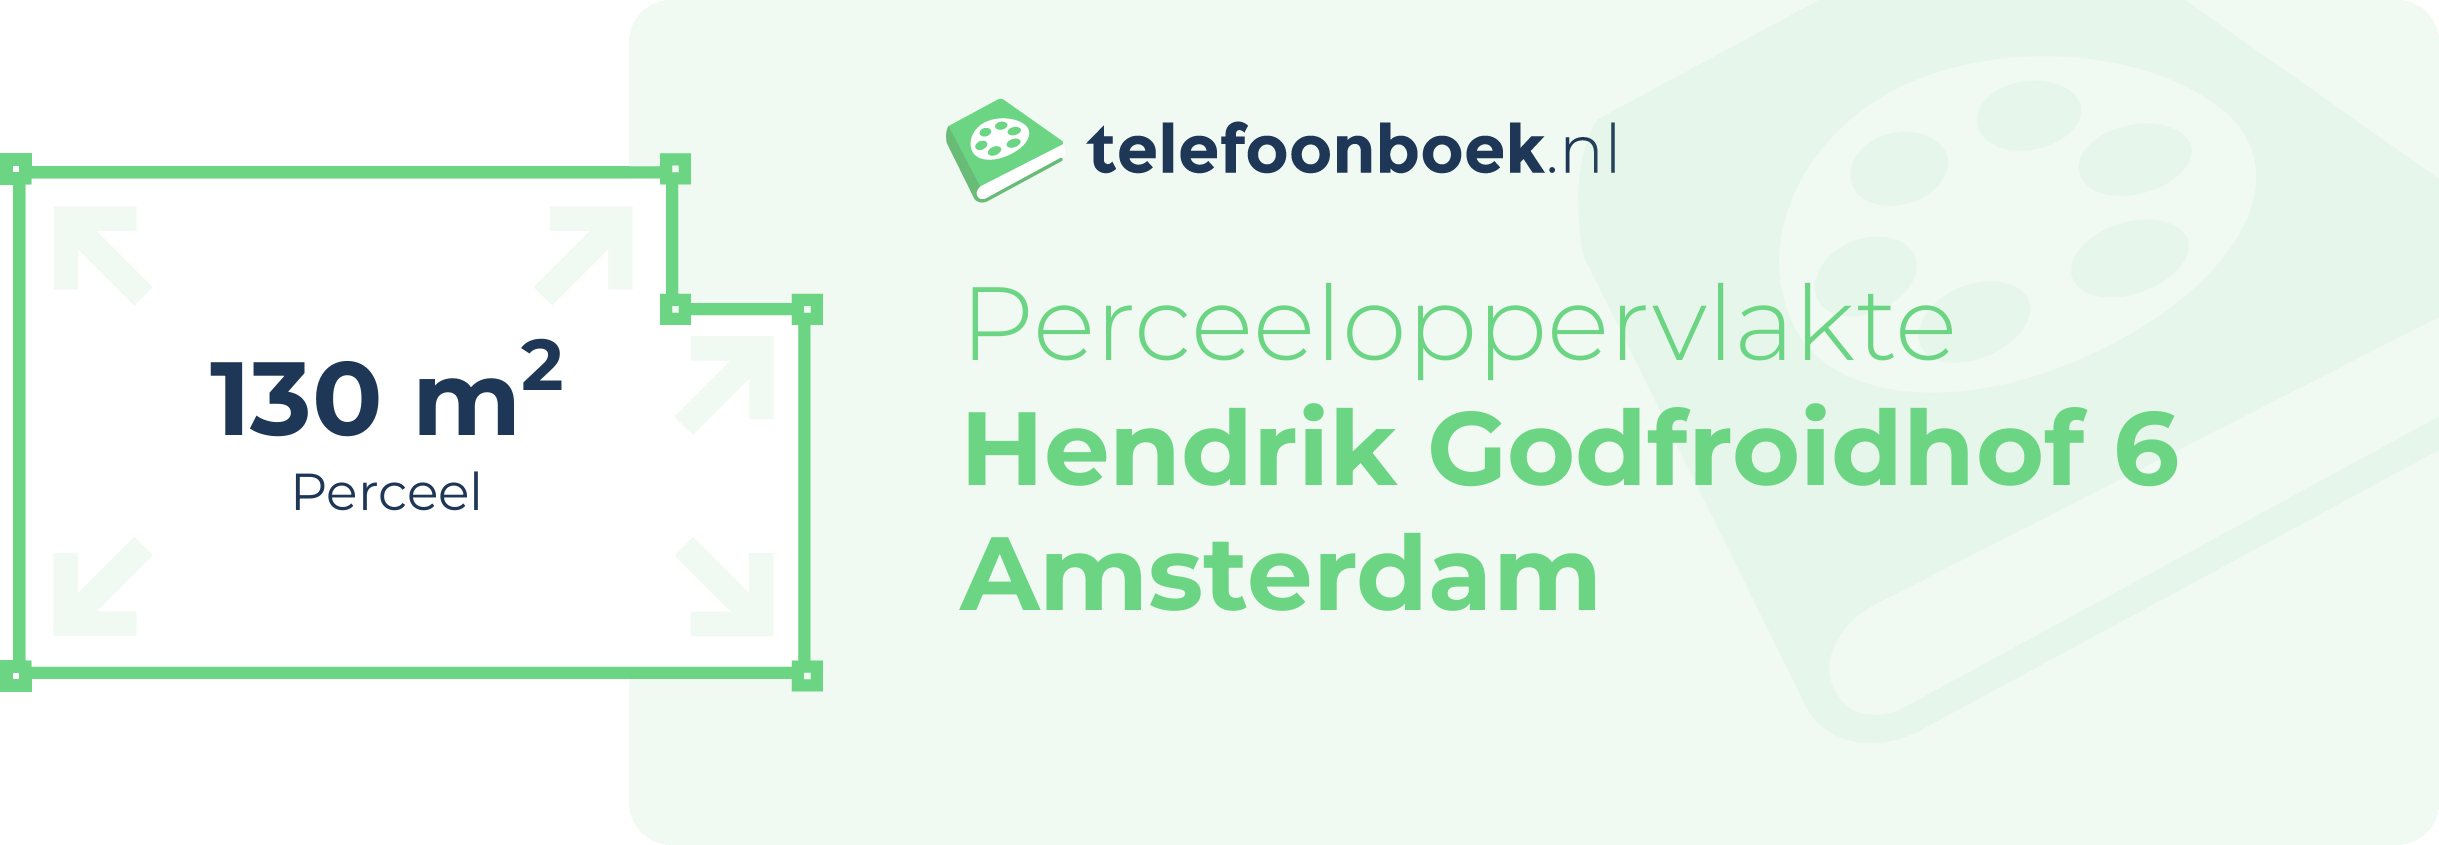 Perceeloppervlakte Hendrik Godfroidhof 6 Amsterdam